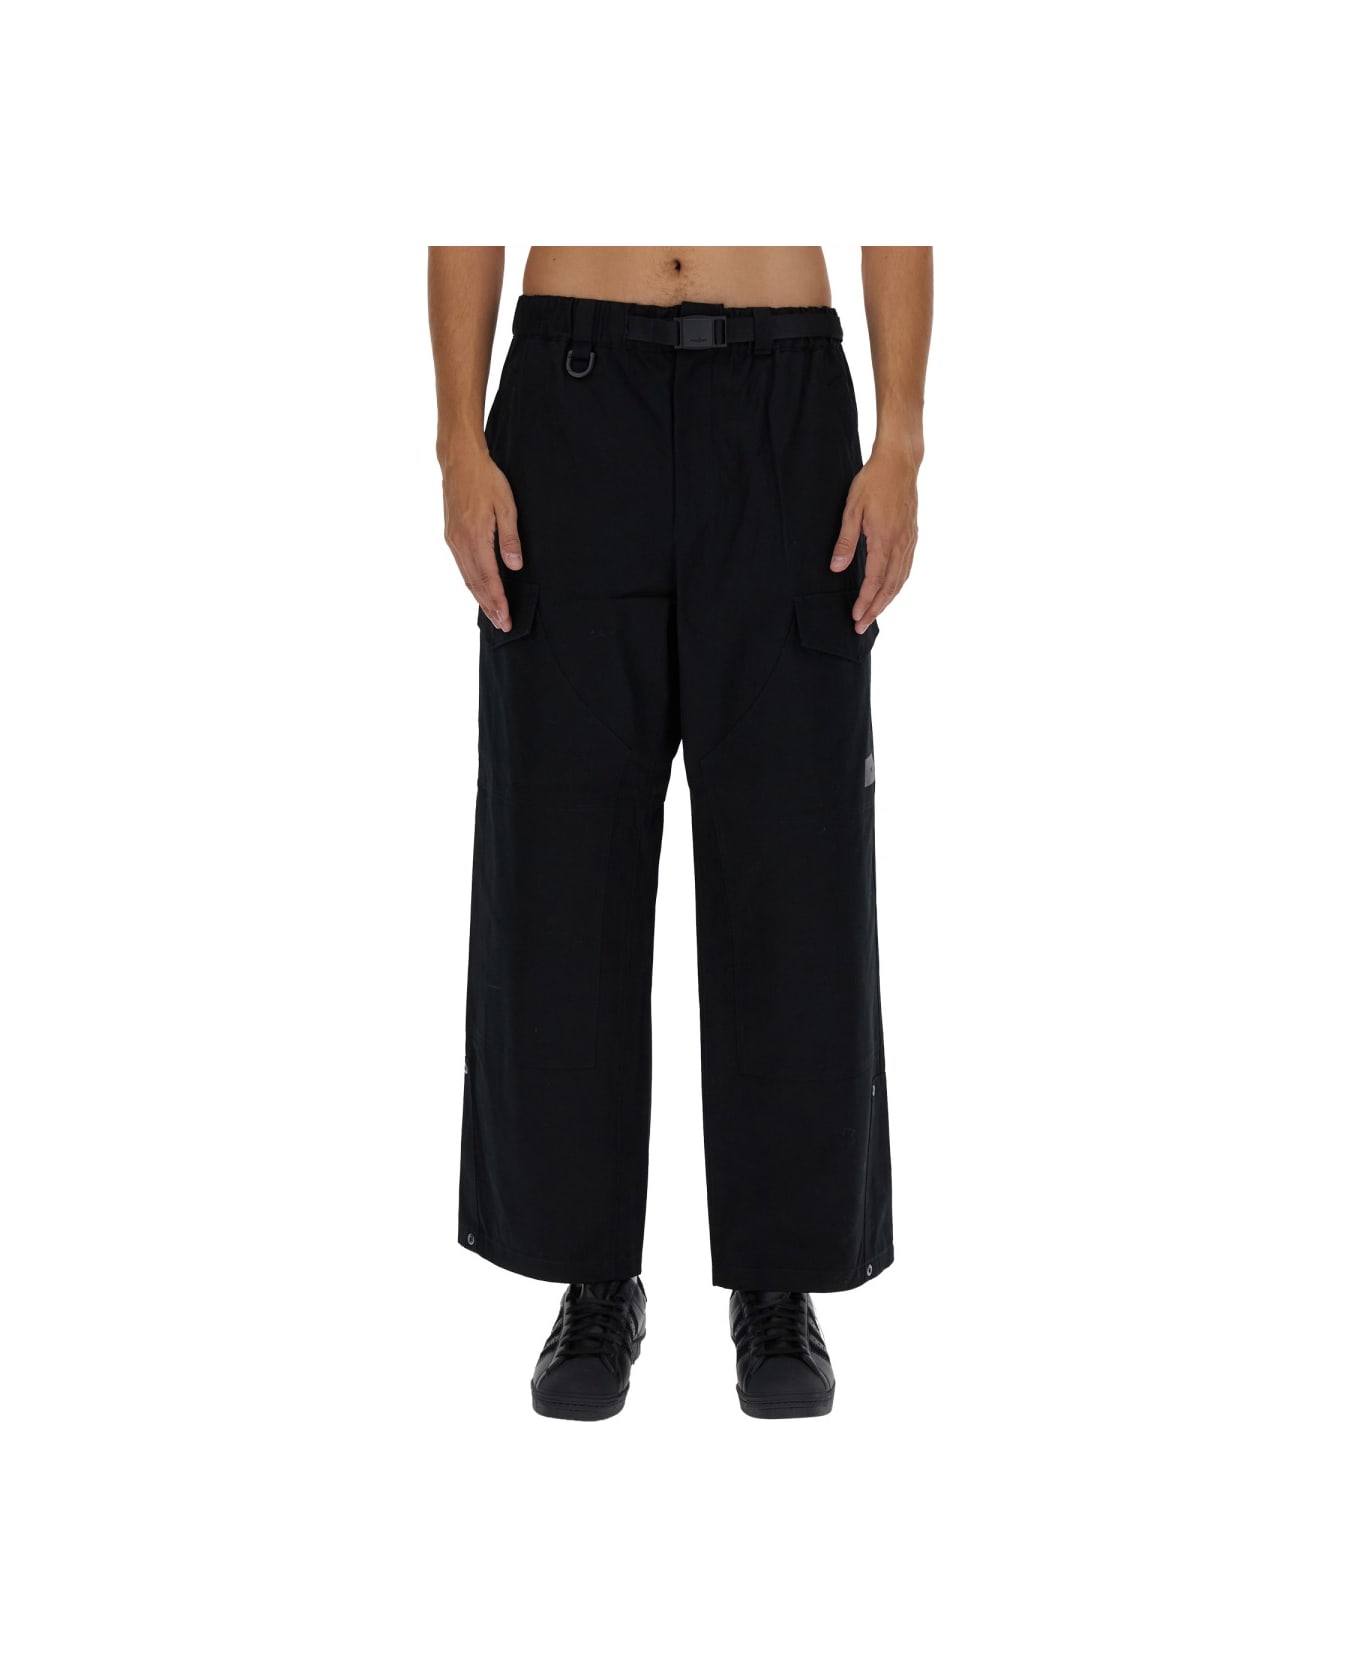 Y-3 Belted Pants - BLACK